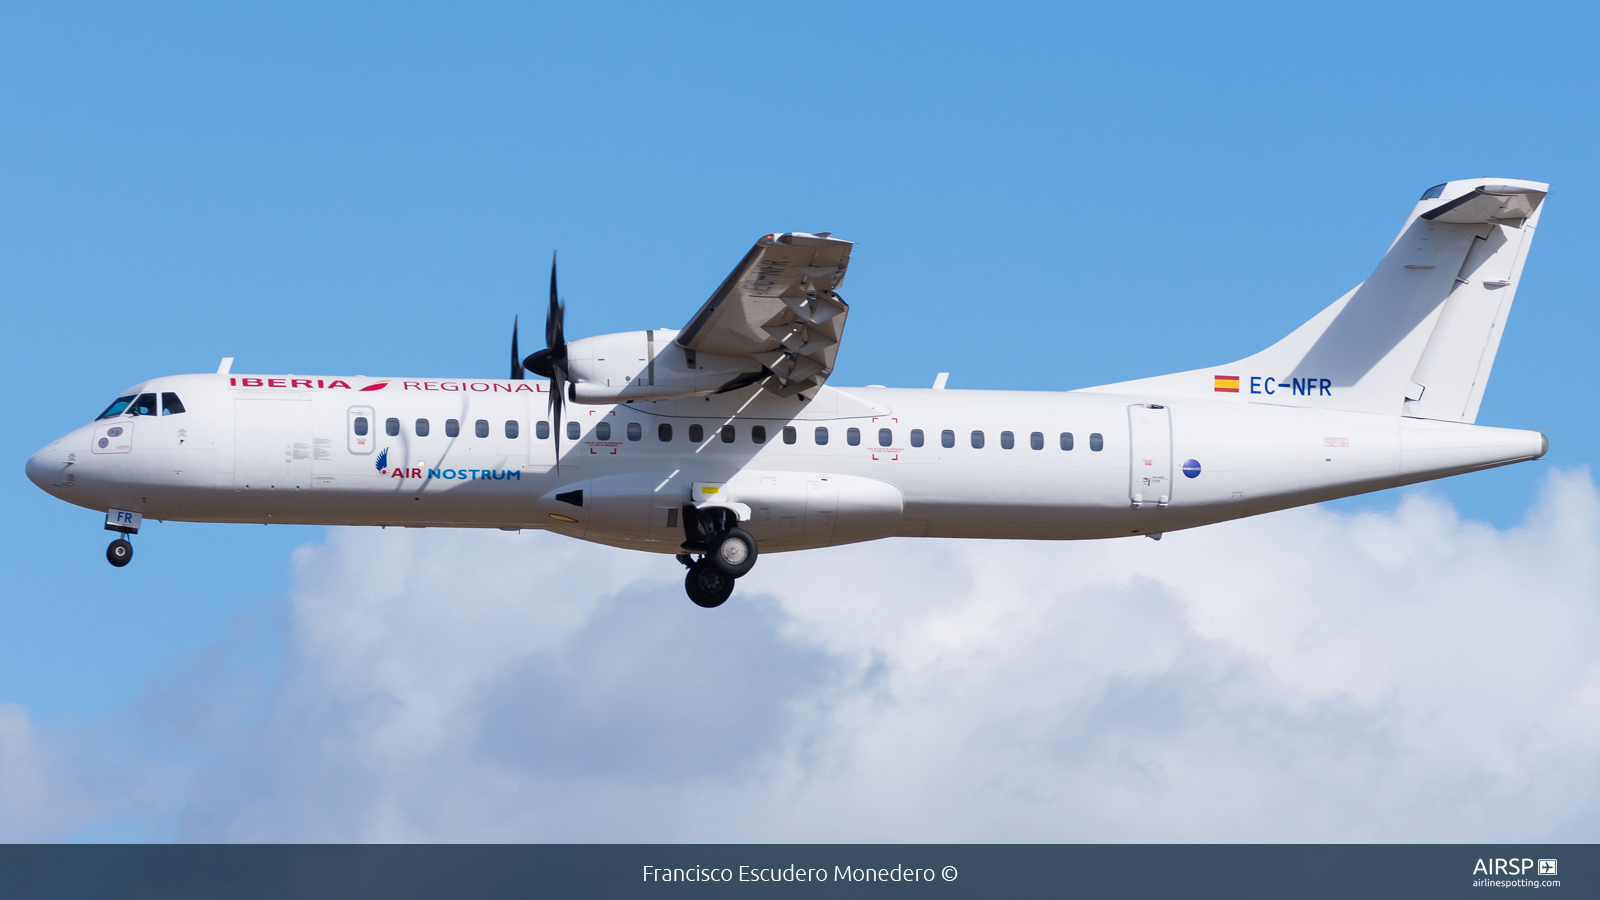 Air Nostrum Iberia Regional  ATR-72  EC-NFR